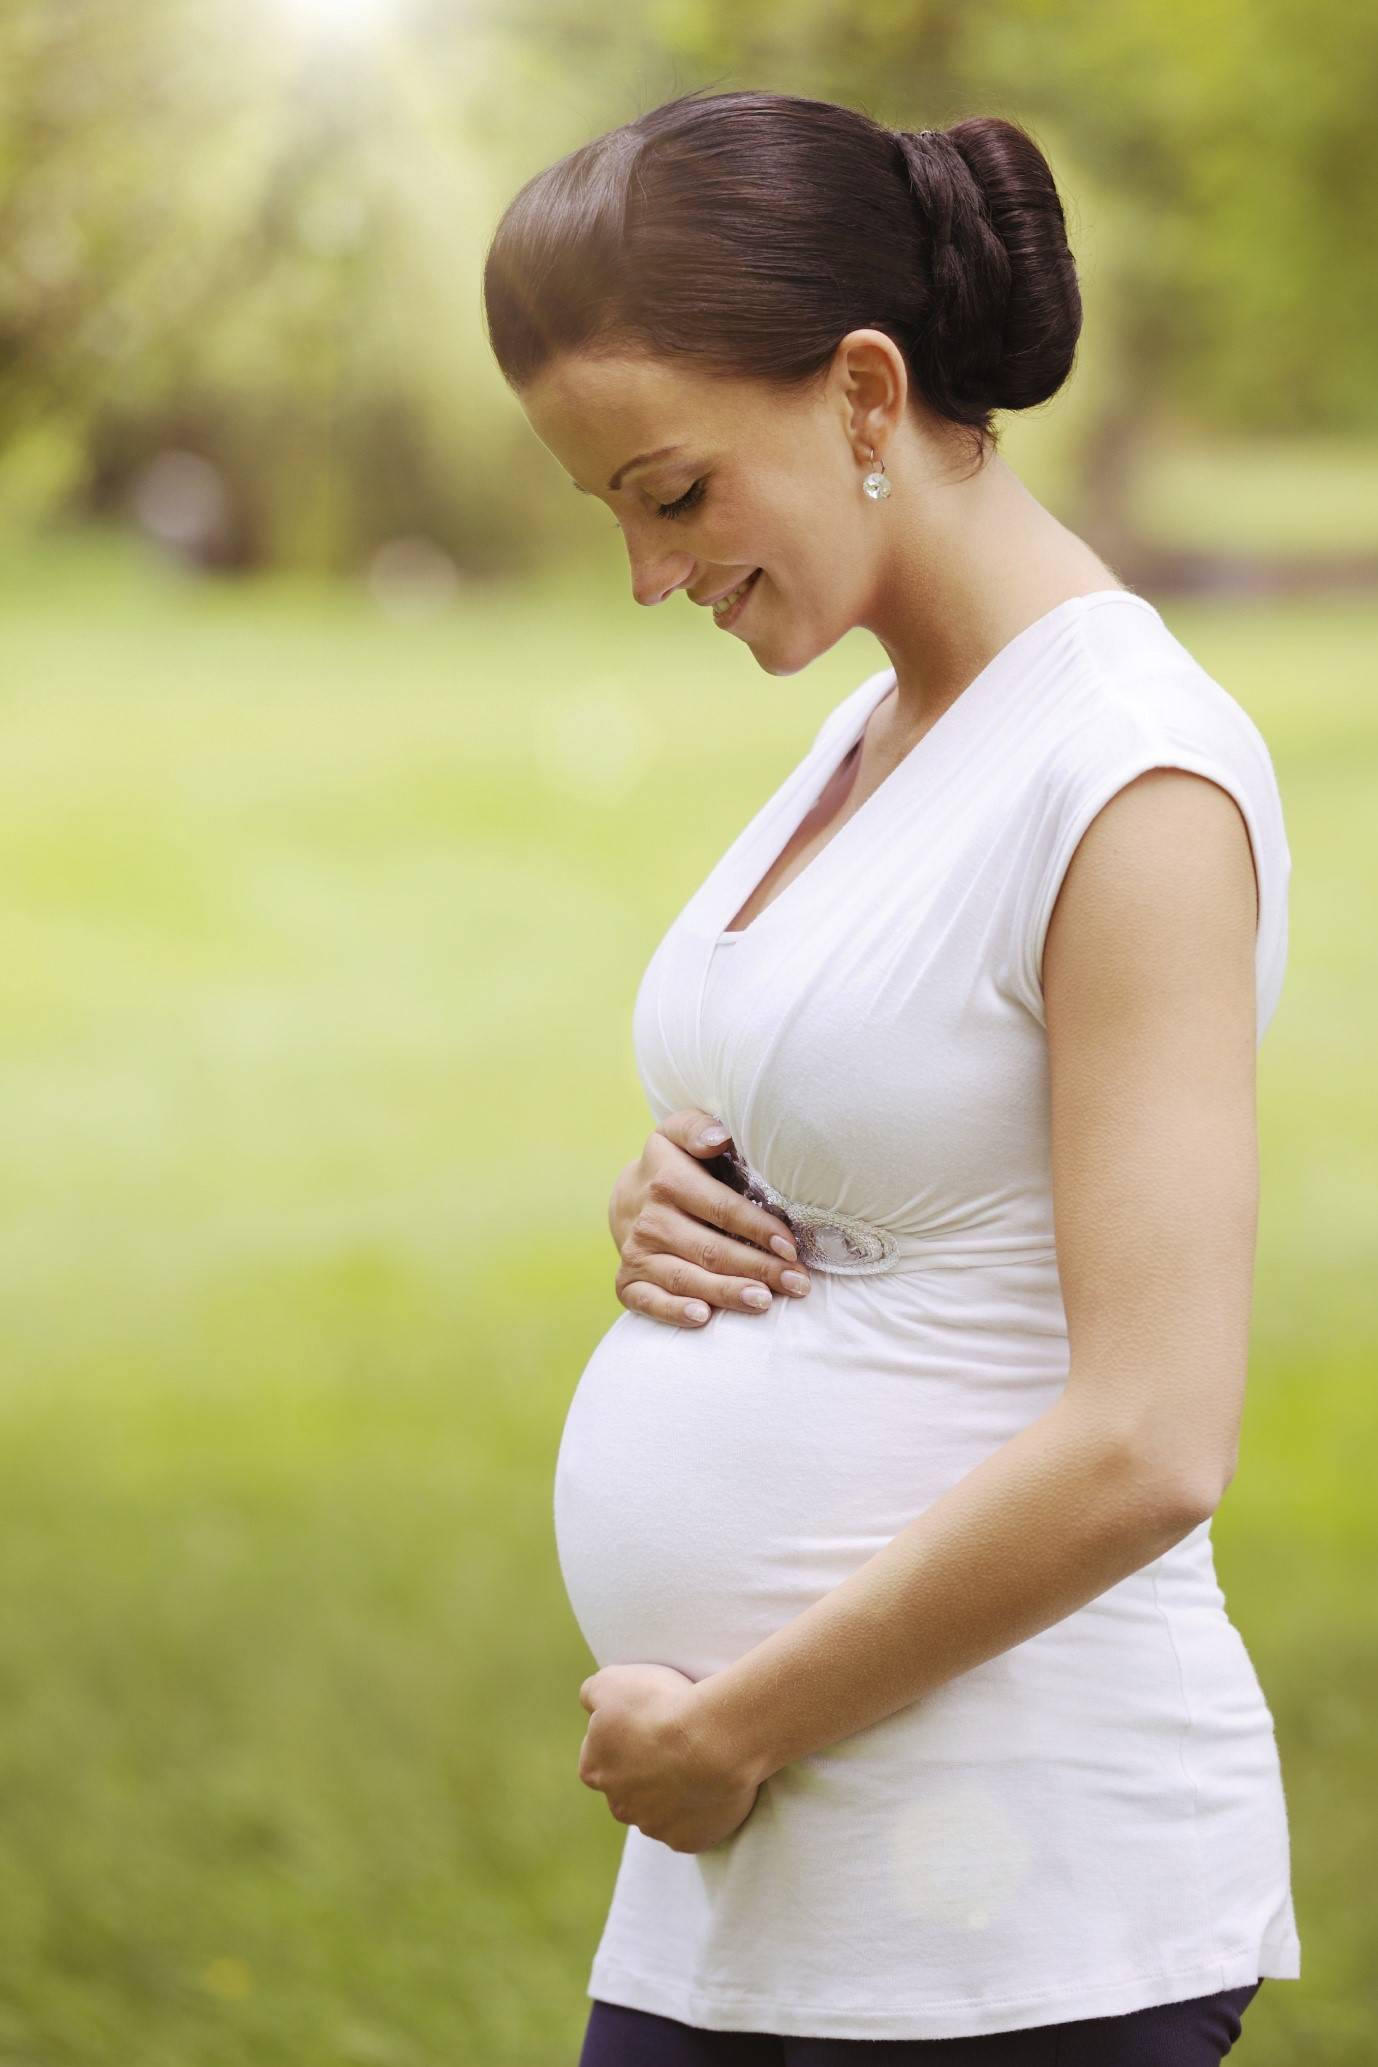 Первый триместр беременности: что нужно знать женщине